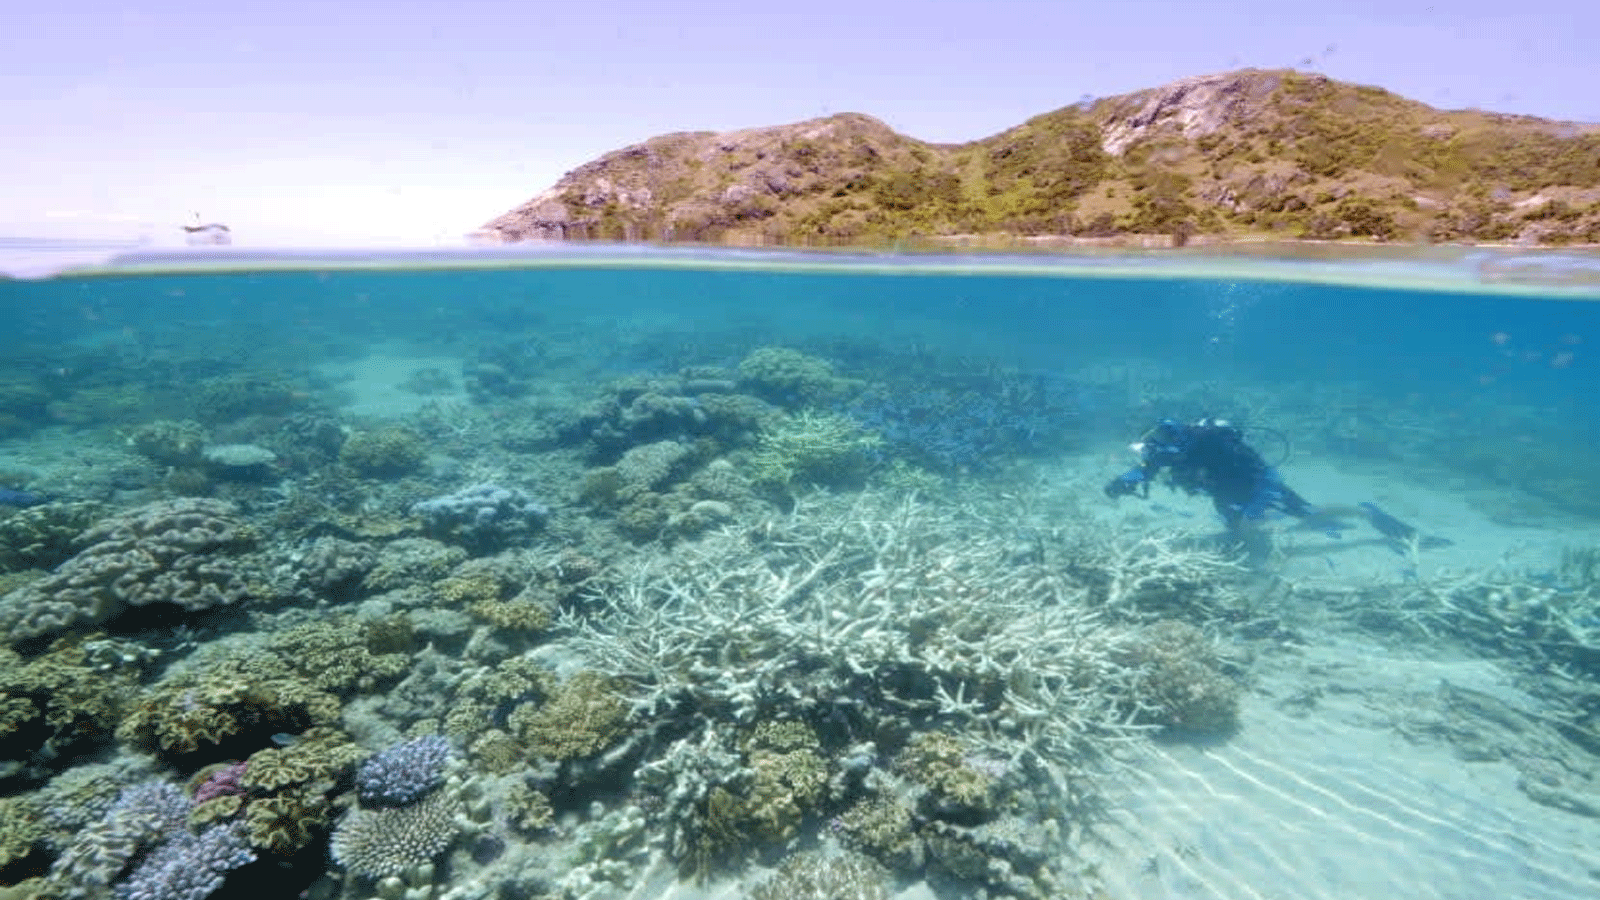  الحاجز المرجاني العظيم في أستراليا يتعرّض للتبييض خلال دورة الطقس في لا نينا، حيث يُتوقع عادةً أن تكون درجات الحرارة أكثر برودة.